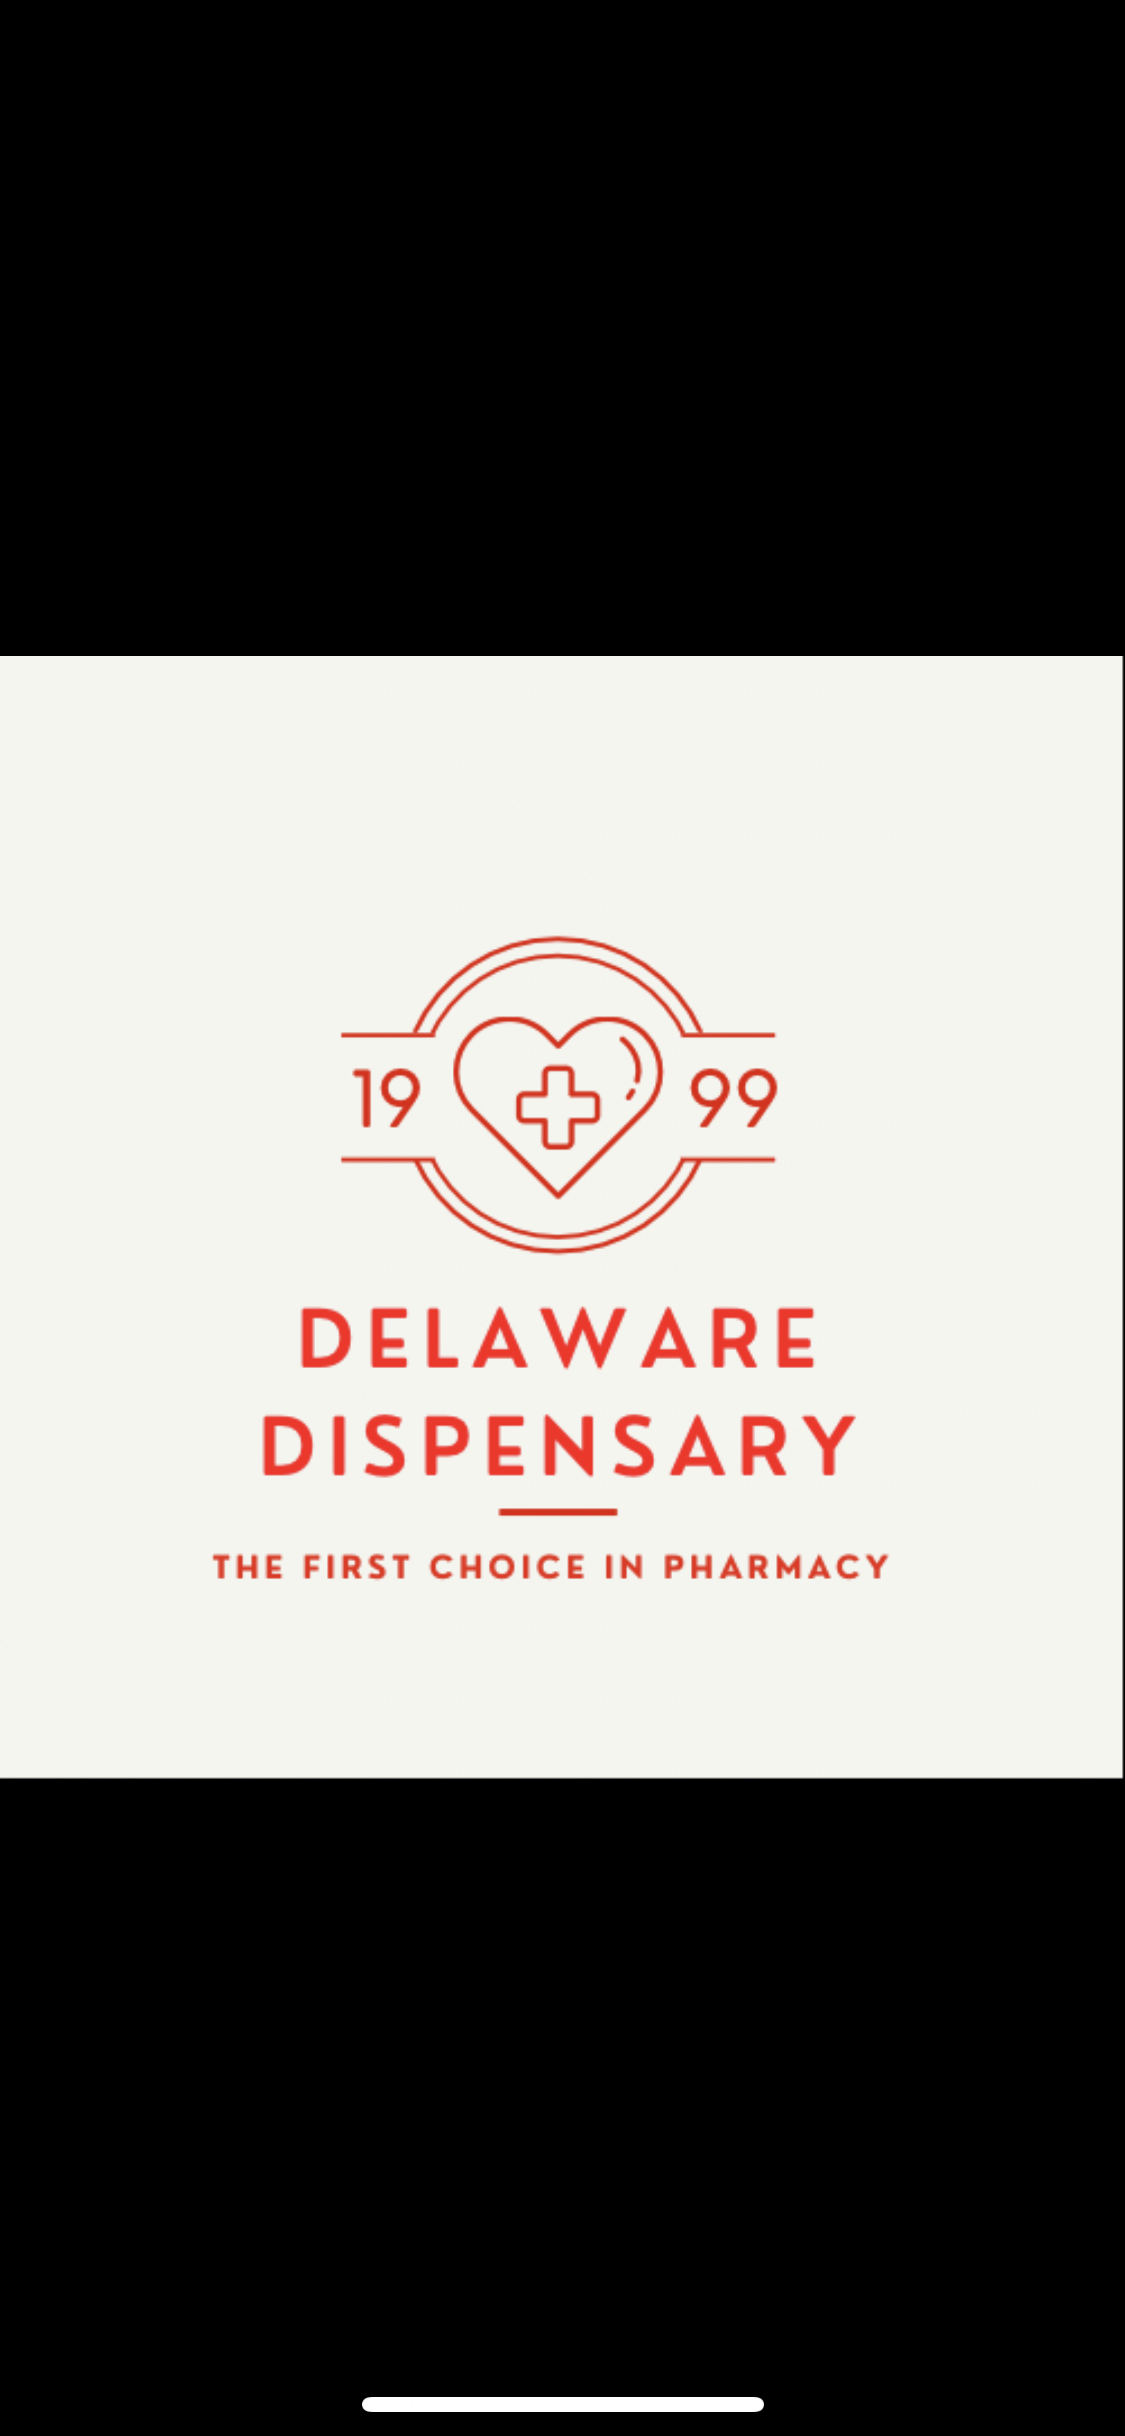 Delaware Dispensary-logo.jpg